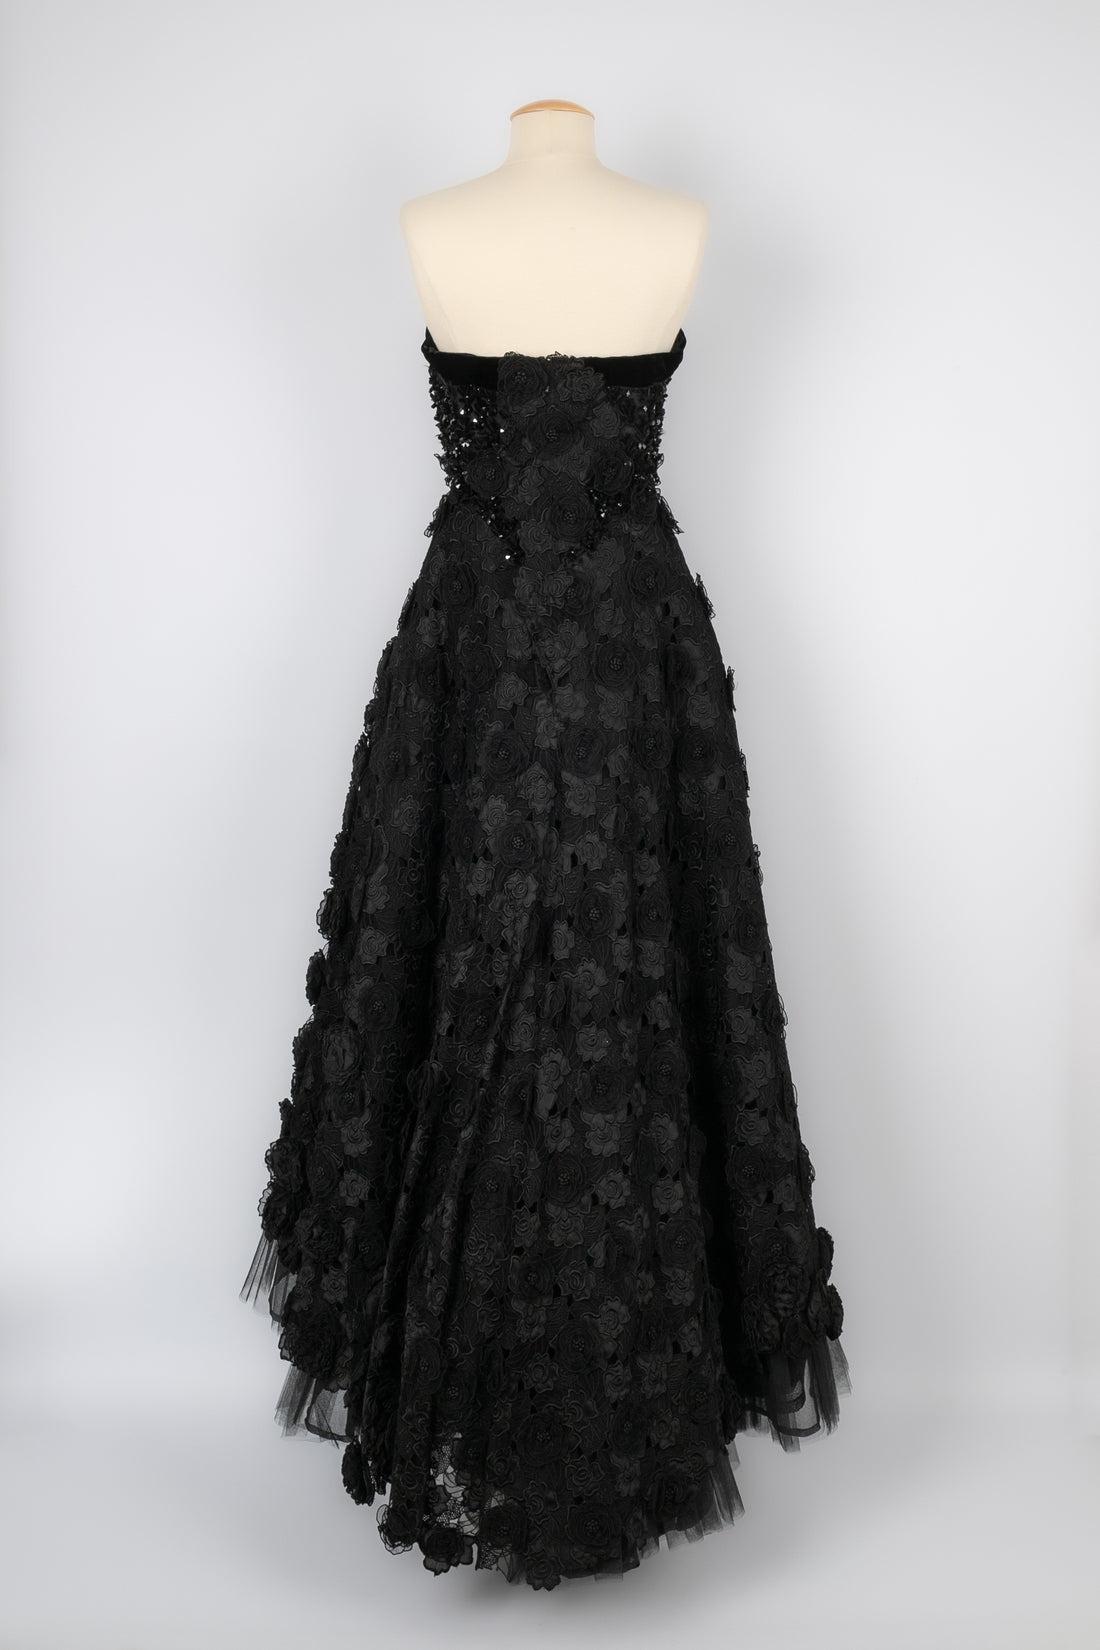 Black Christian Lacroix Bustier Dress Haute Couture